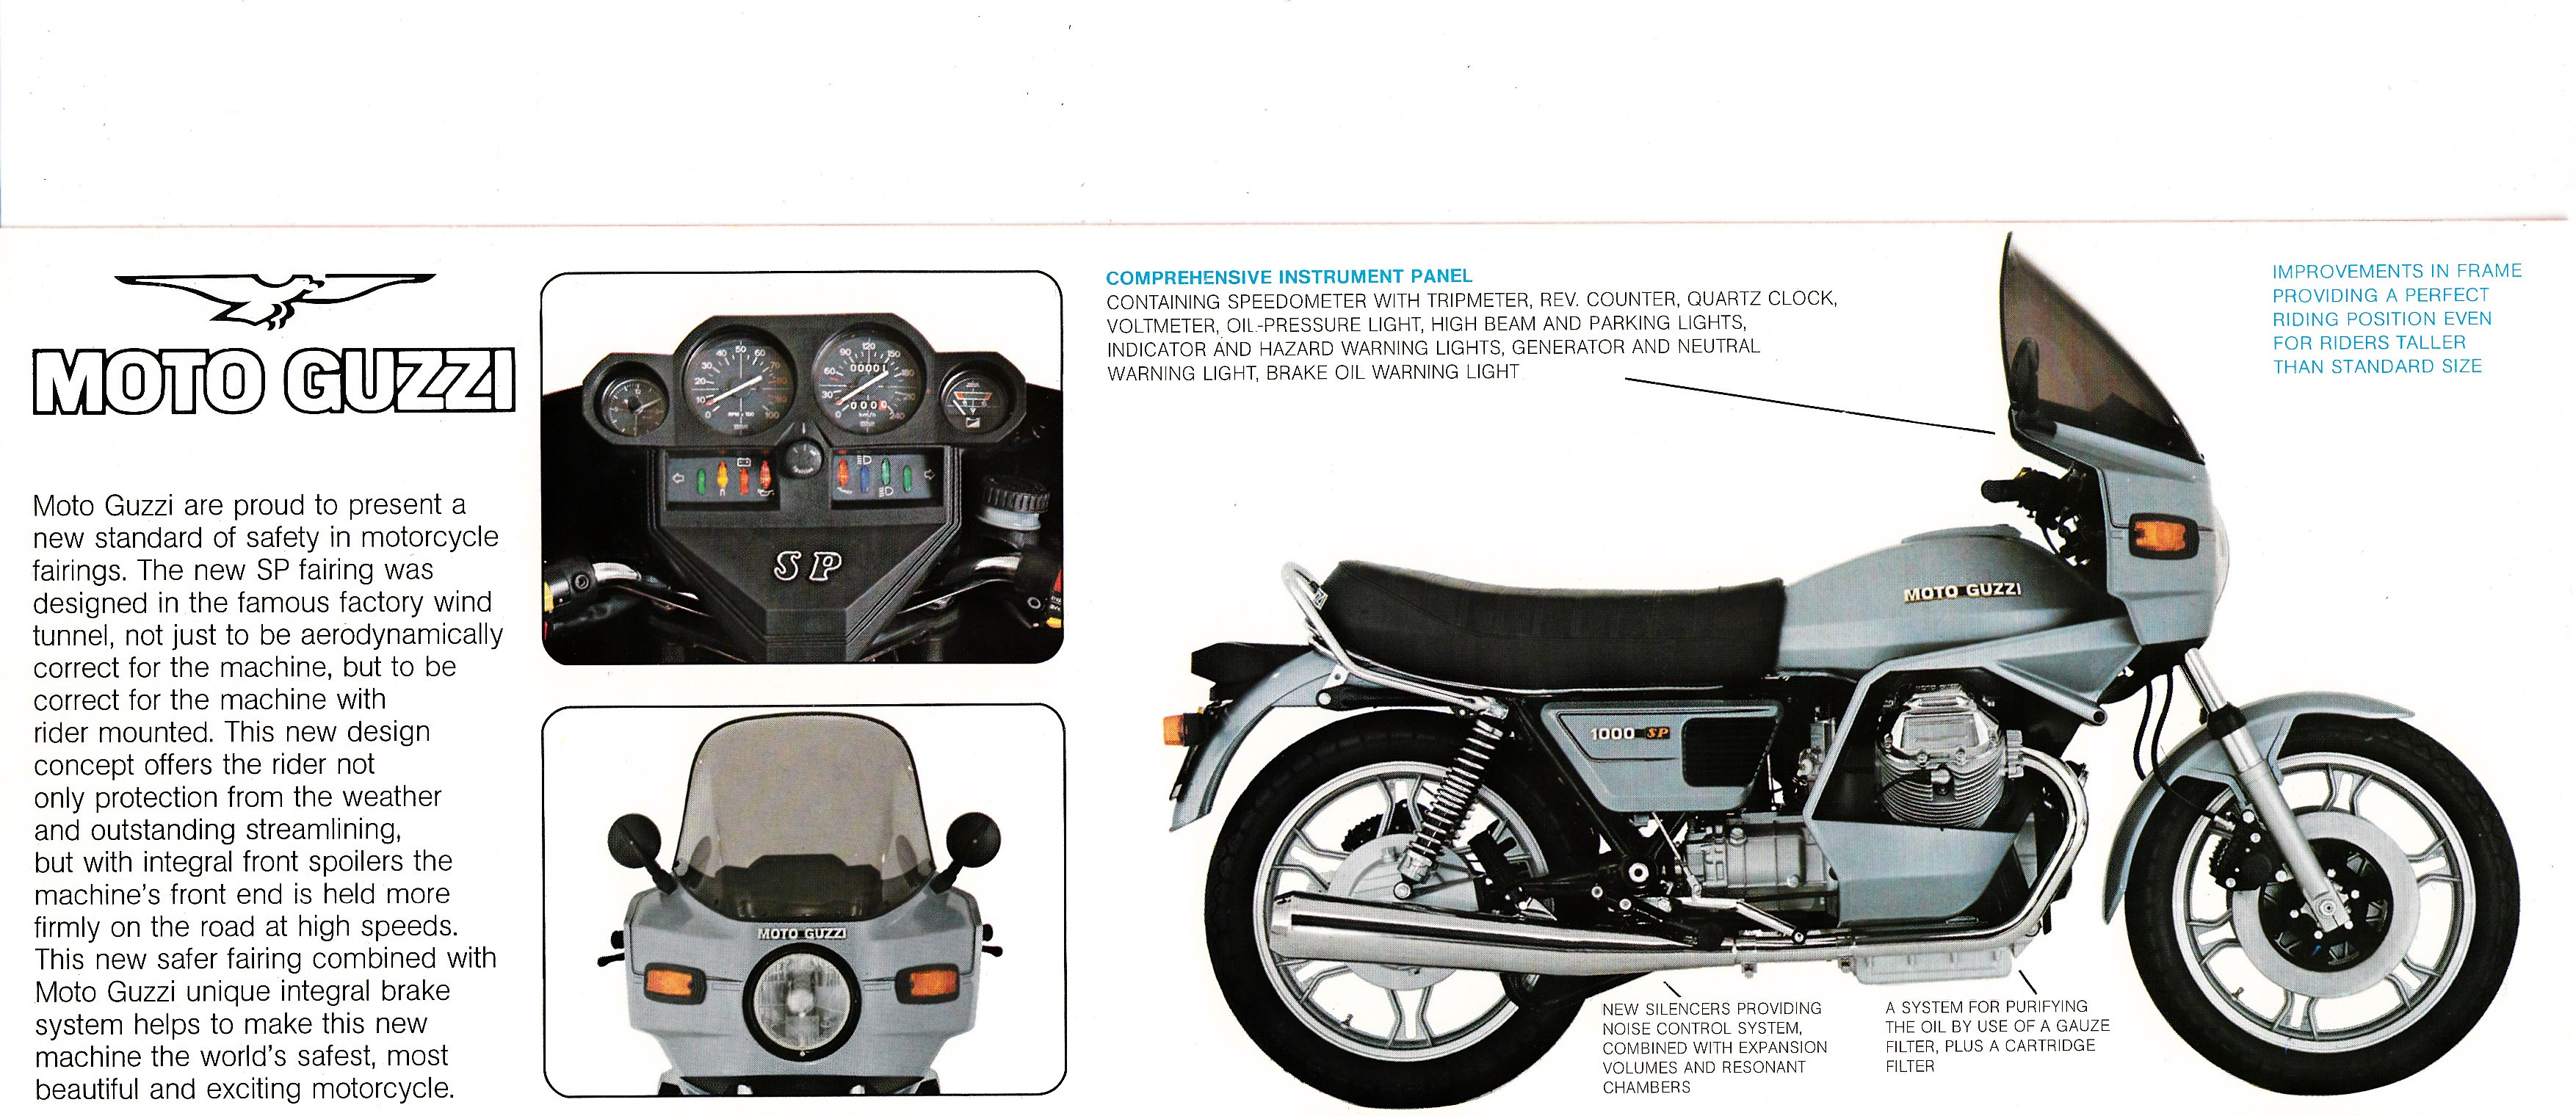 Brochure - Moto Guzzi 1000 SP (blue, folded style brochure)